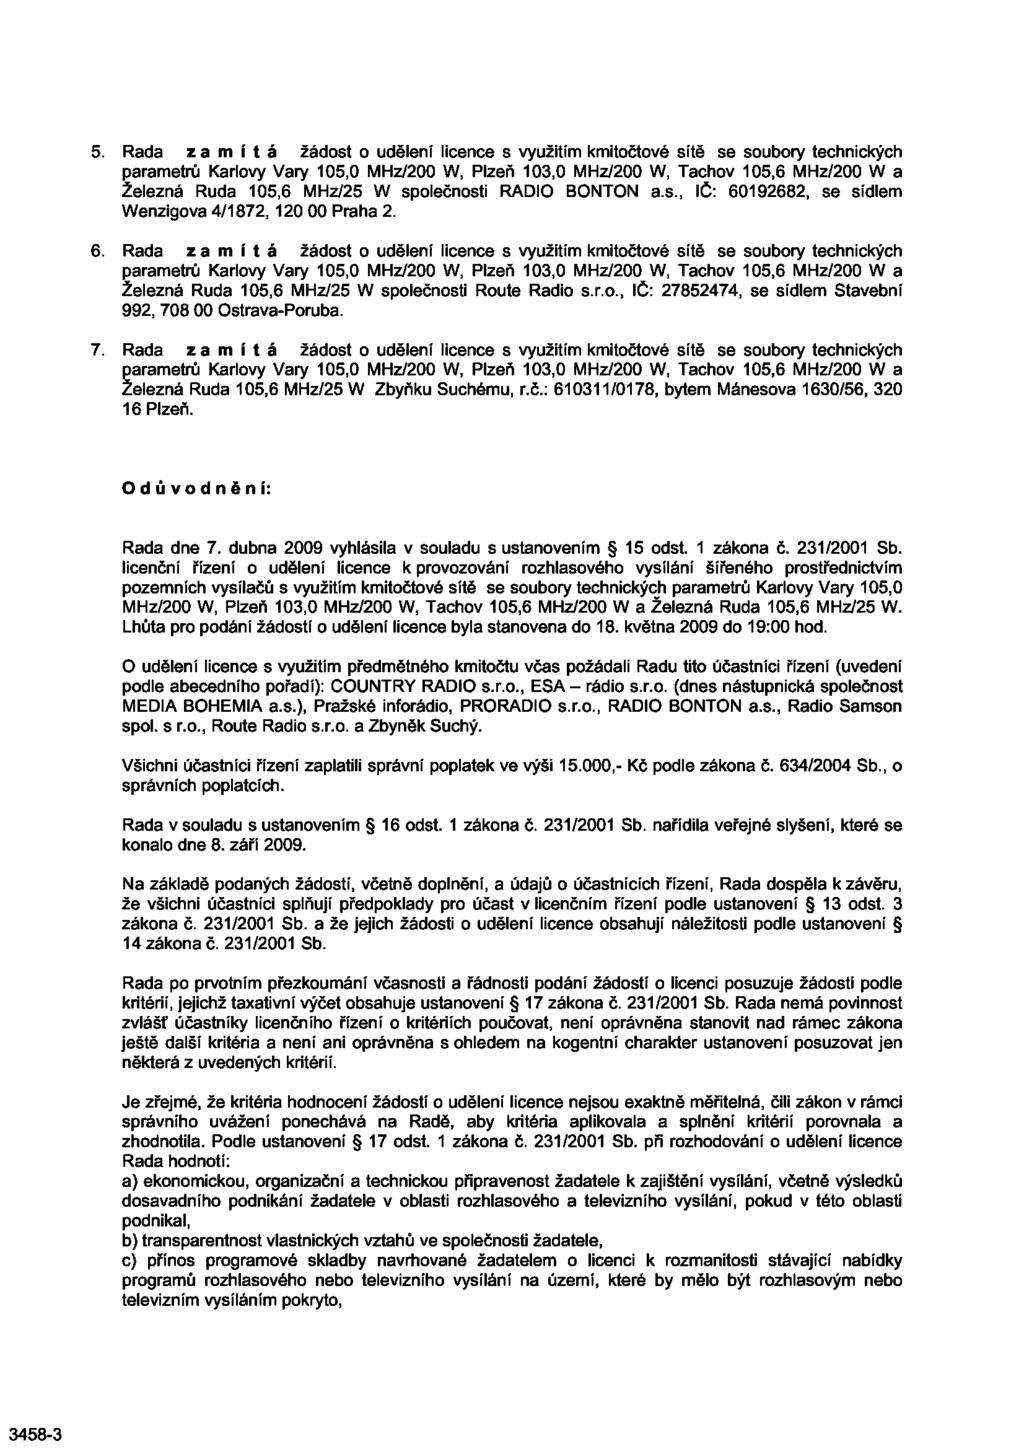 Rada zamítá žádost o udělení licence s využitím kmitočtové sítě se soubory technických parametrů Karlovy Vary 105,0 MHz/200 W, Plzeň 103,0 MHz/200 W, Tachov 105,6 MHz/200 W a Železná Ruda 105,6